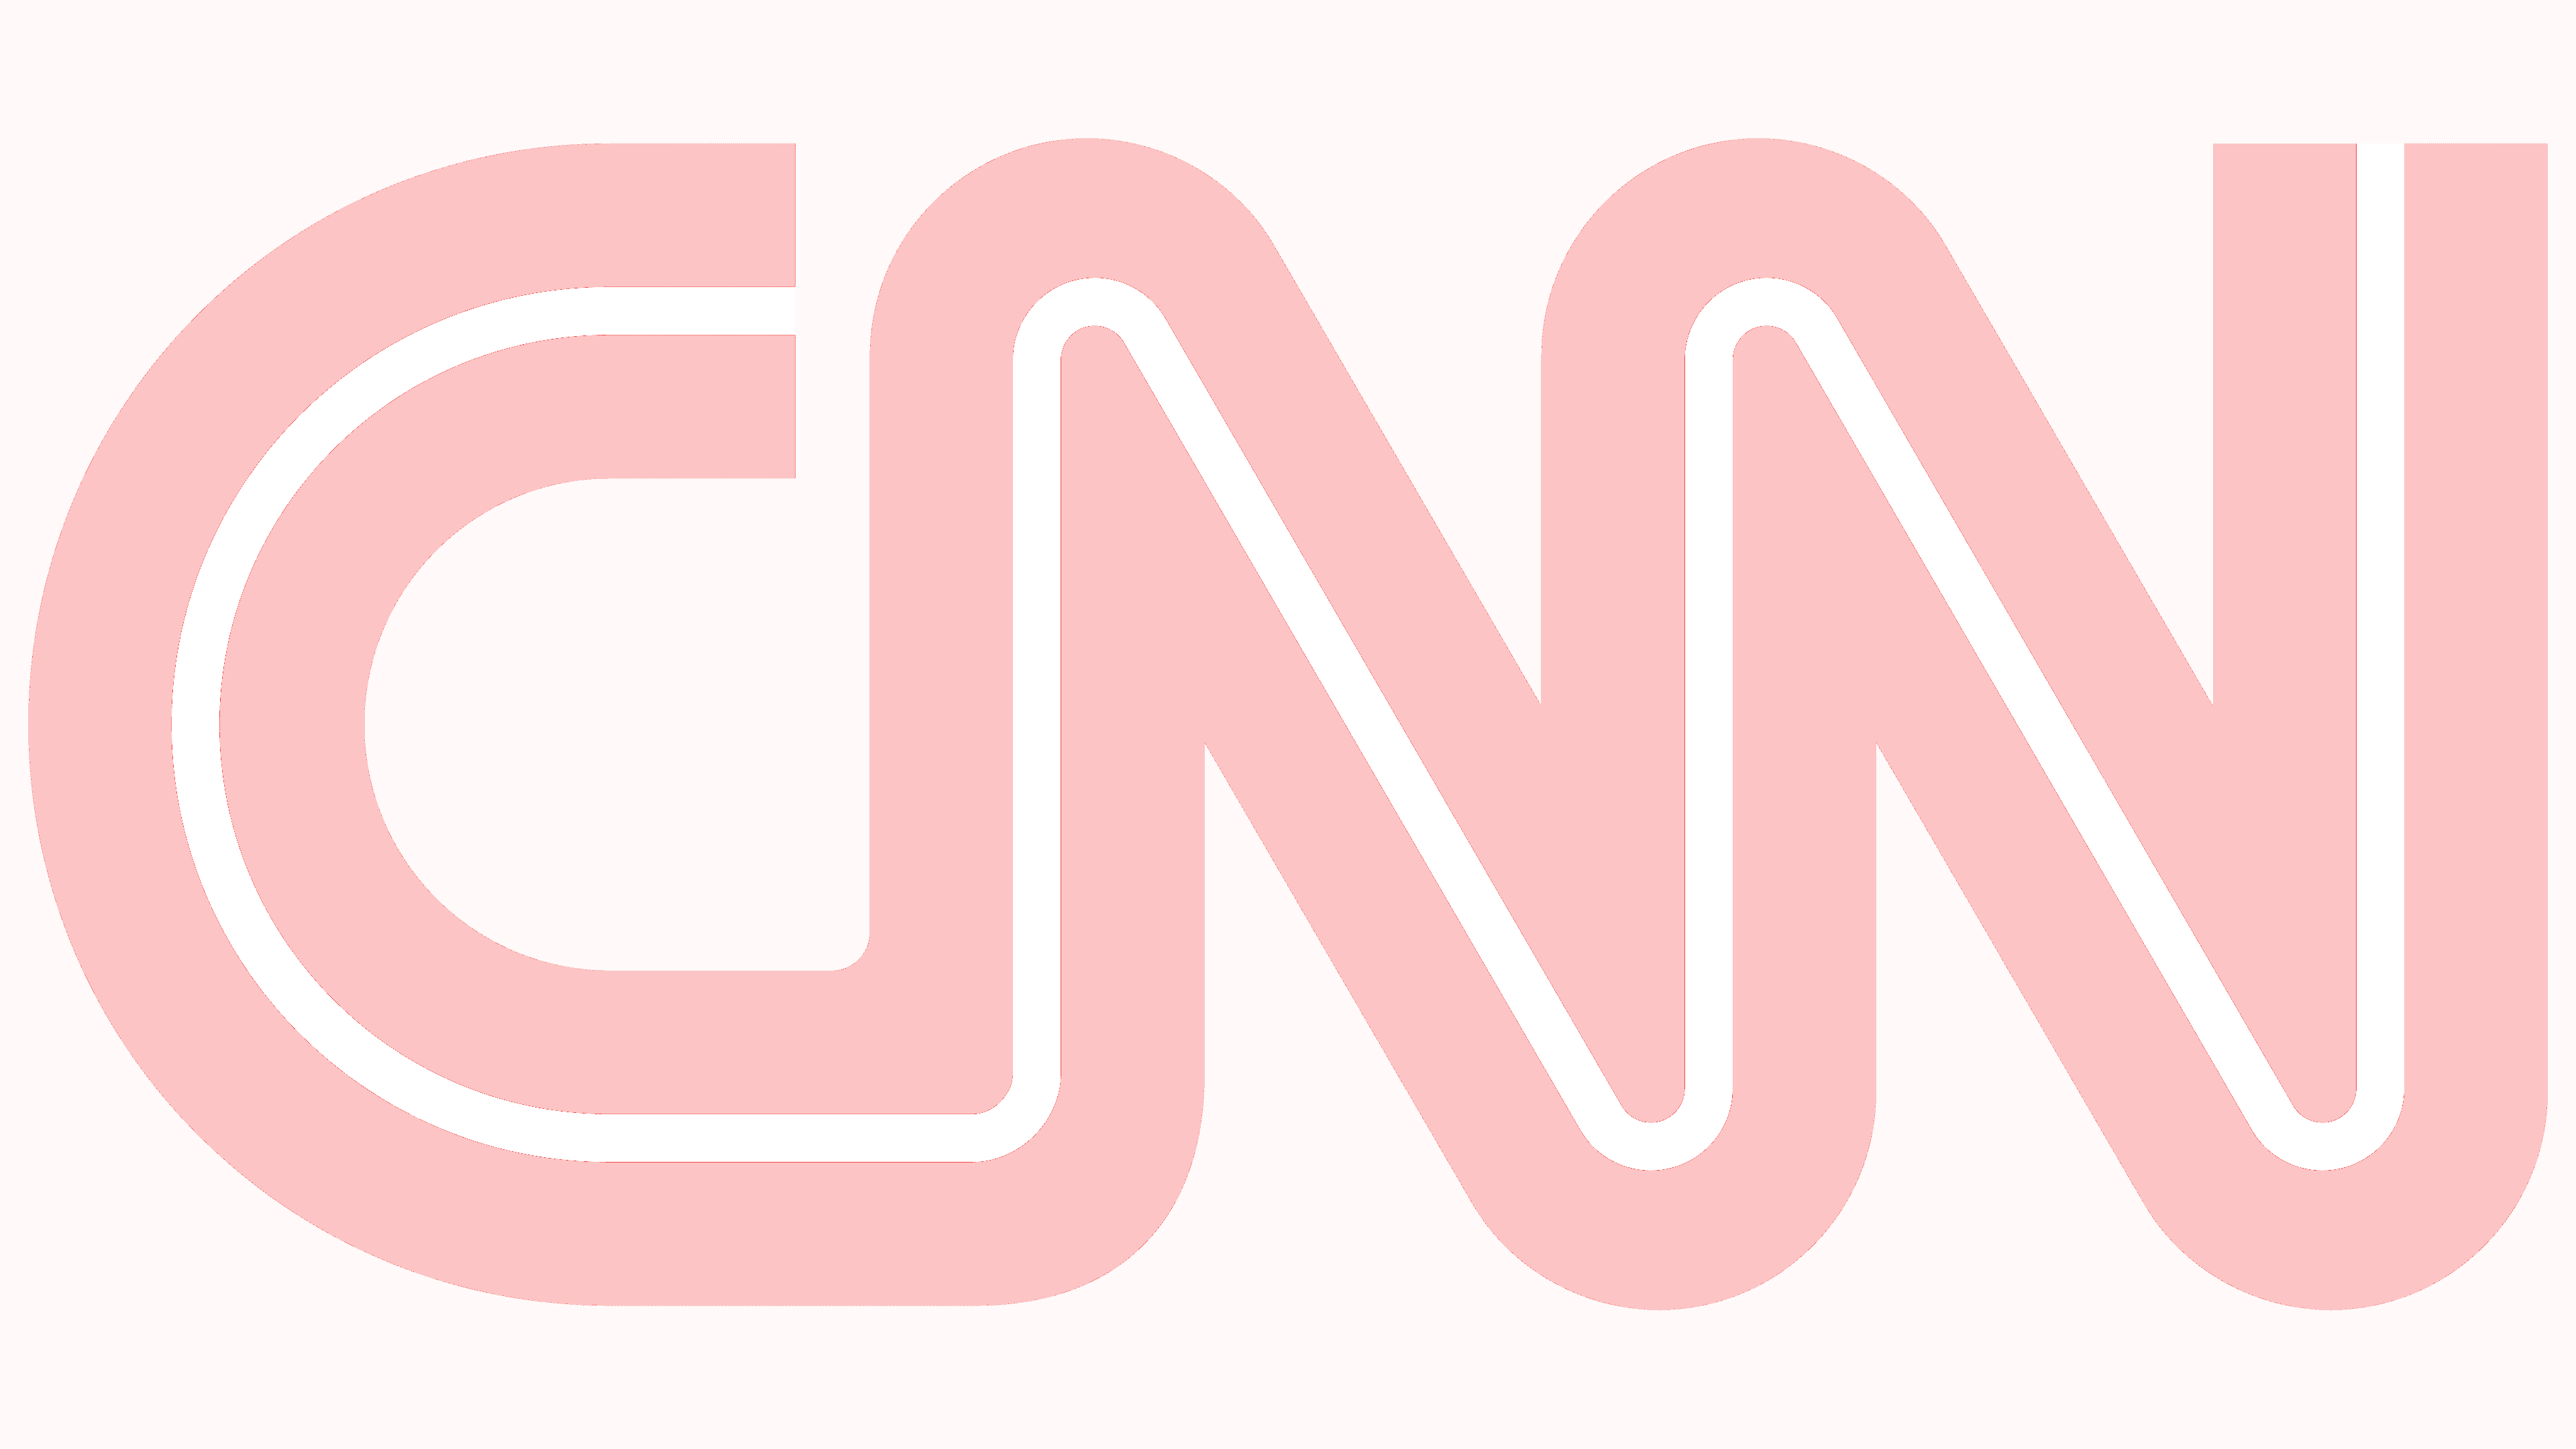 logo-CNN